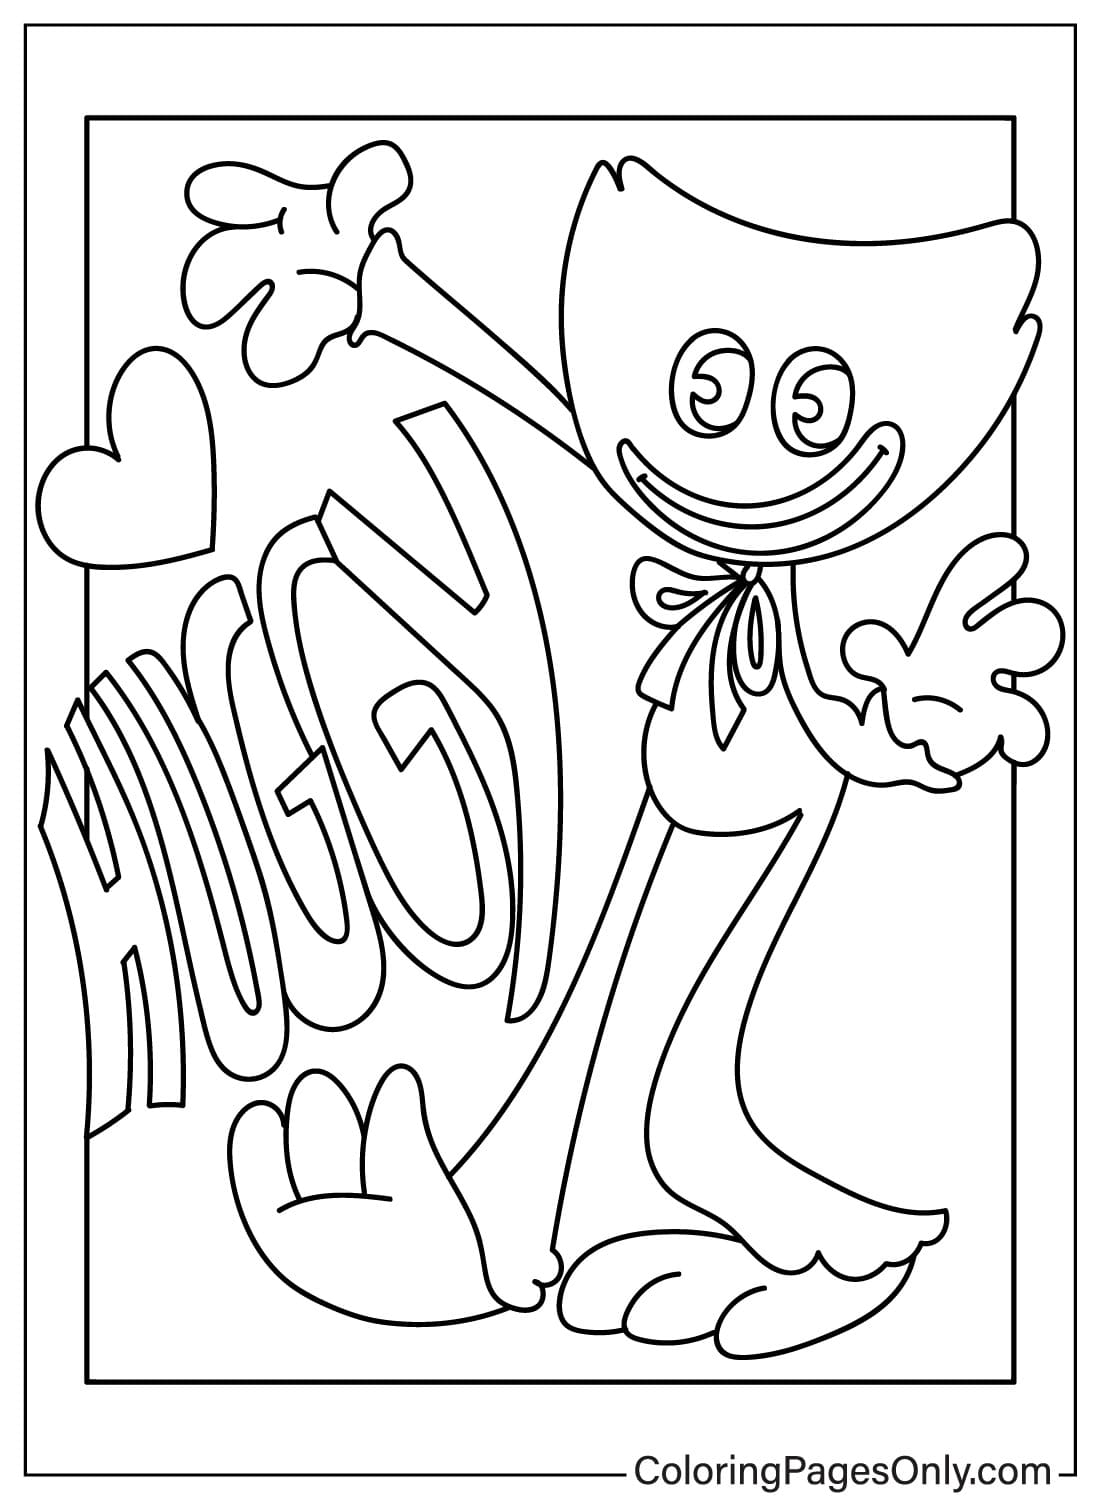 Página para colorear de Huggy Wuggy gratis de Huggy Wuggy